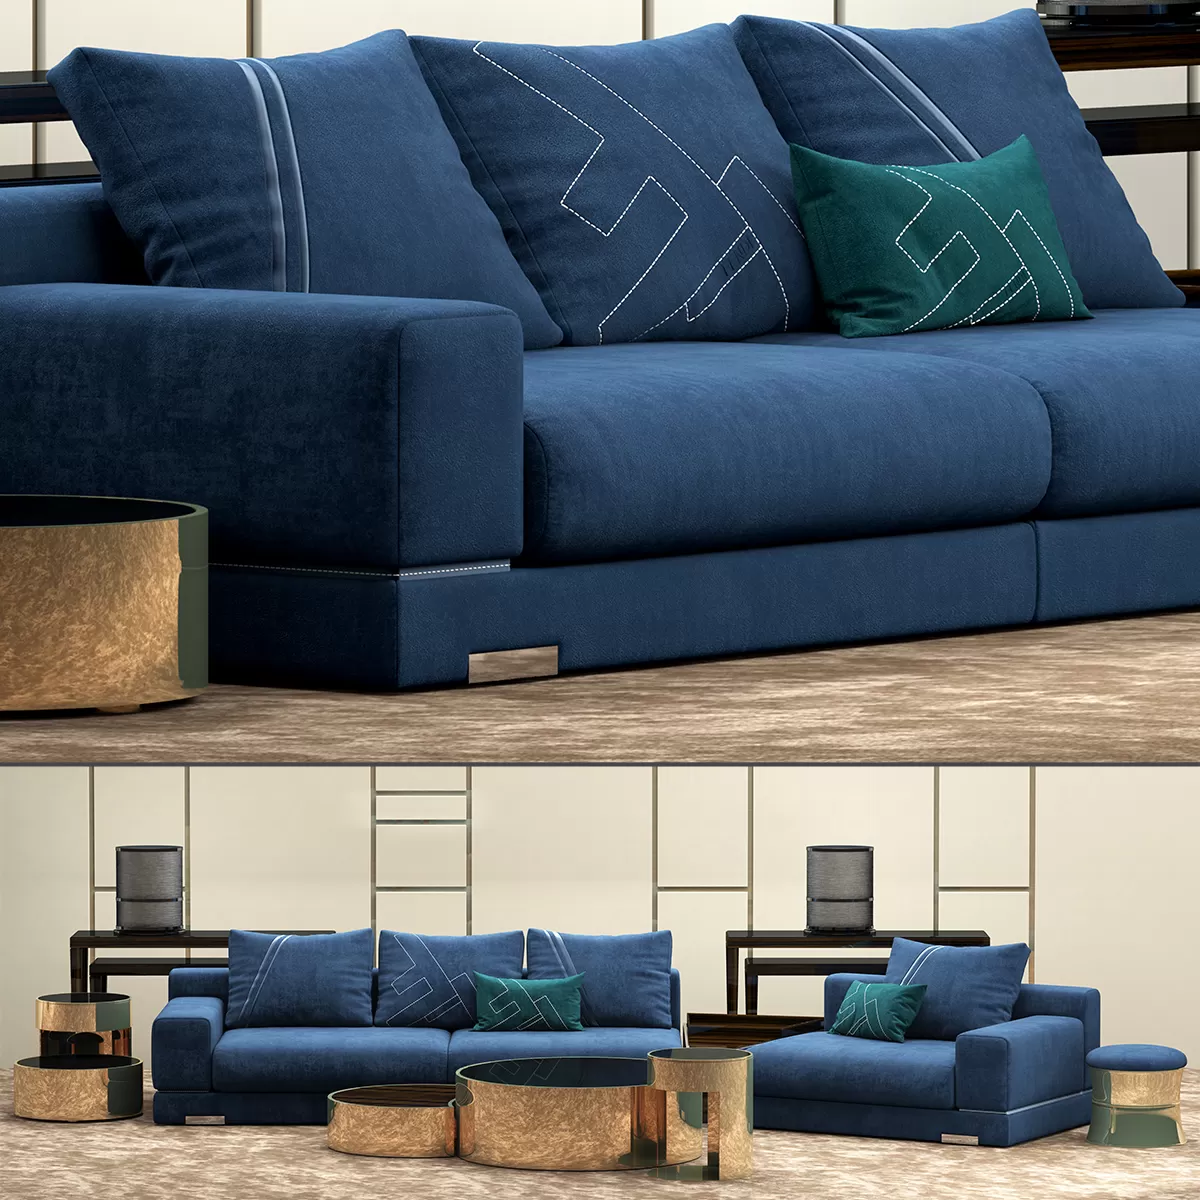 SOFA – Fendi Casa Madison sofa set